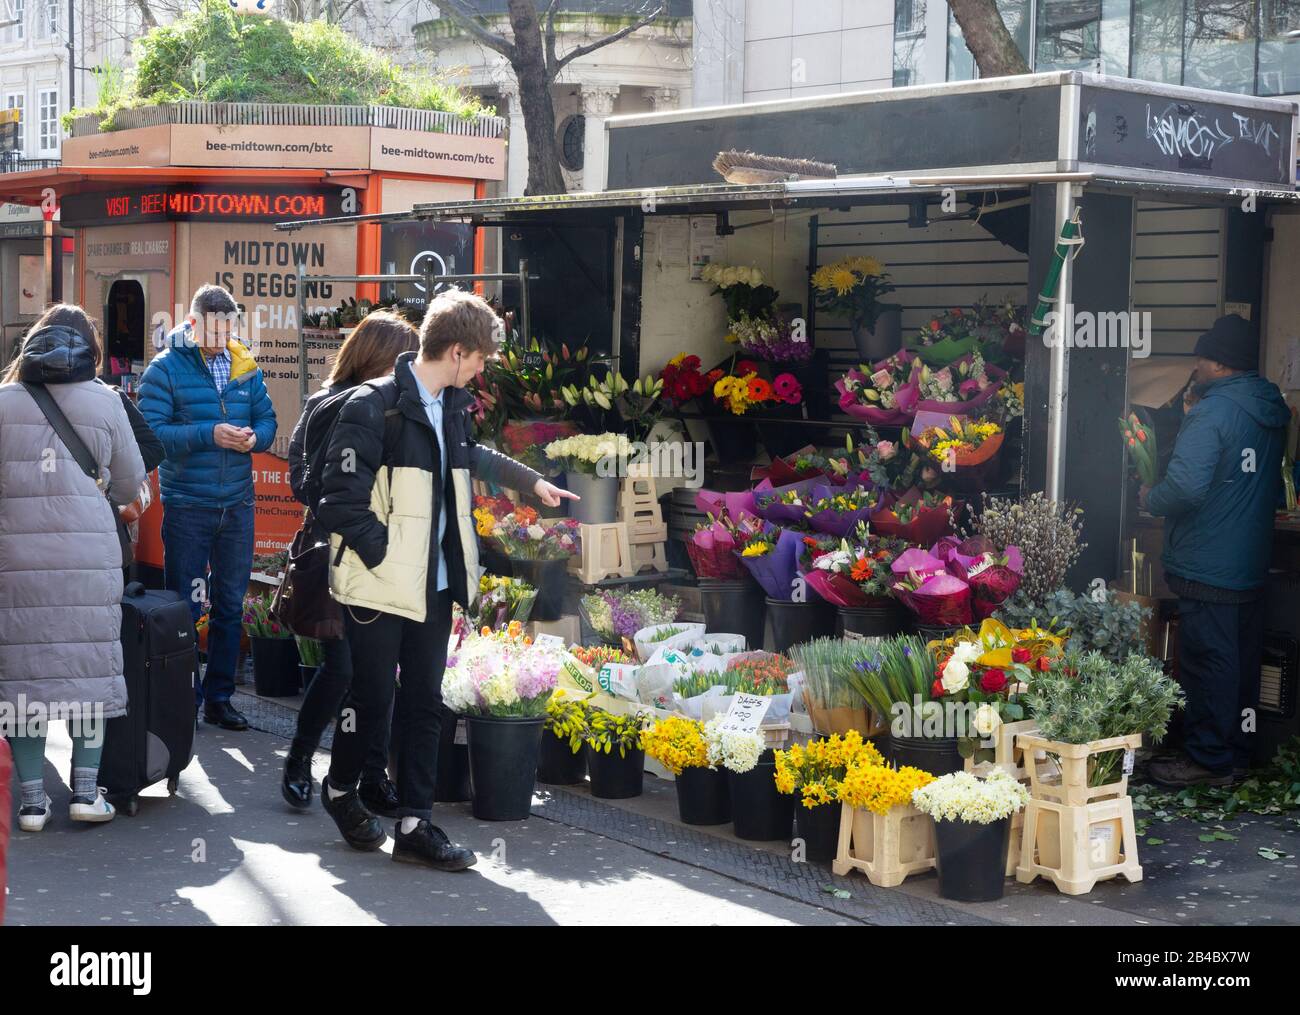 Flower stall London - gente che acquista fiori in una stalla di fiori di strada, Holborn, Londra UK; esempio London Lifestyle Foto Stock